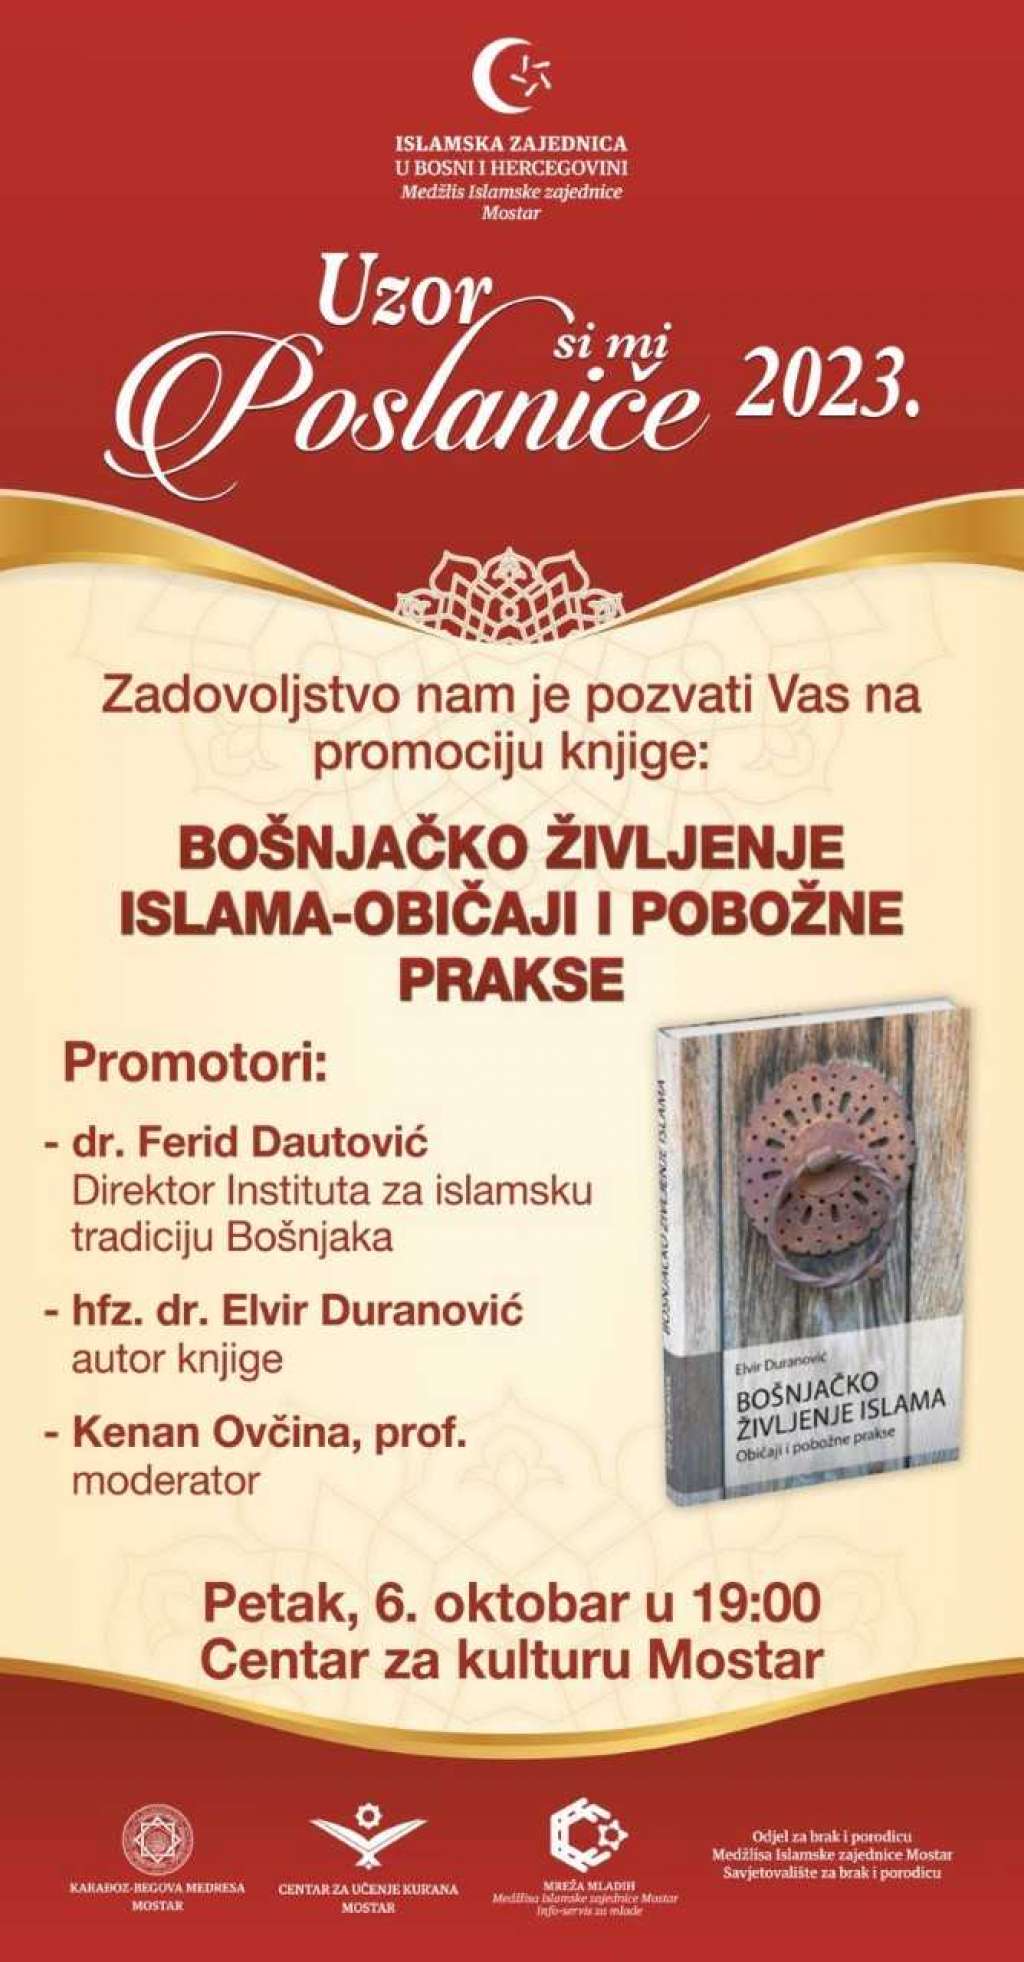 Predstavljanje knjige 'Bošnjačko življenje islama' večeras u Mostaru